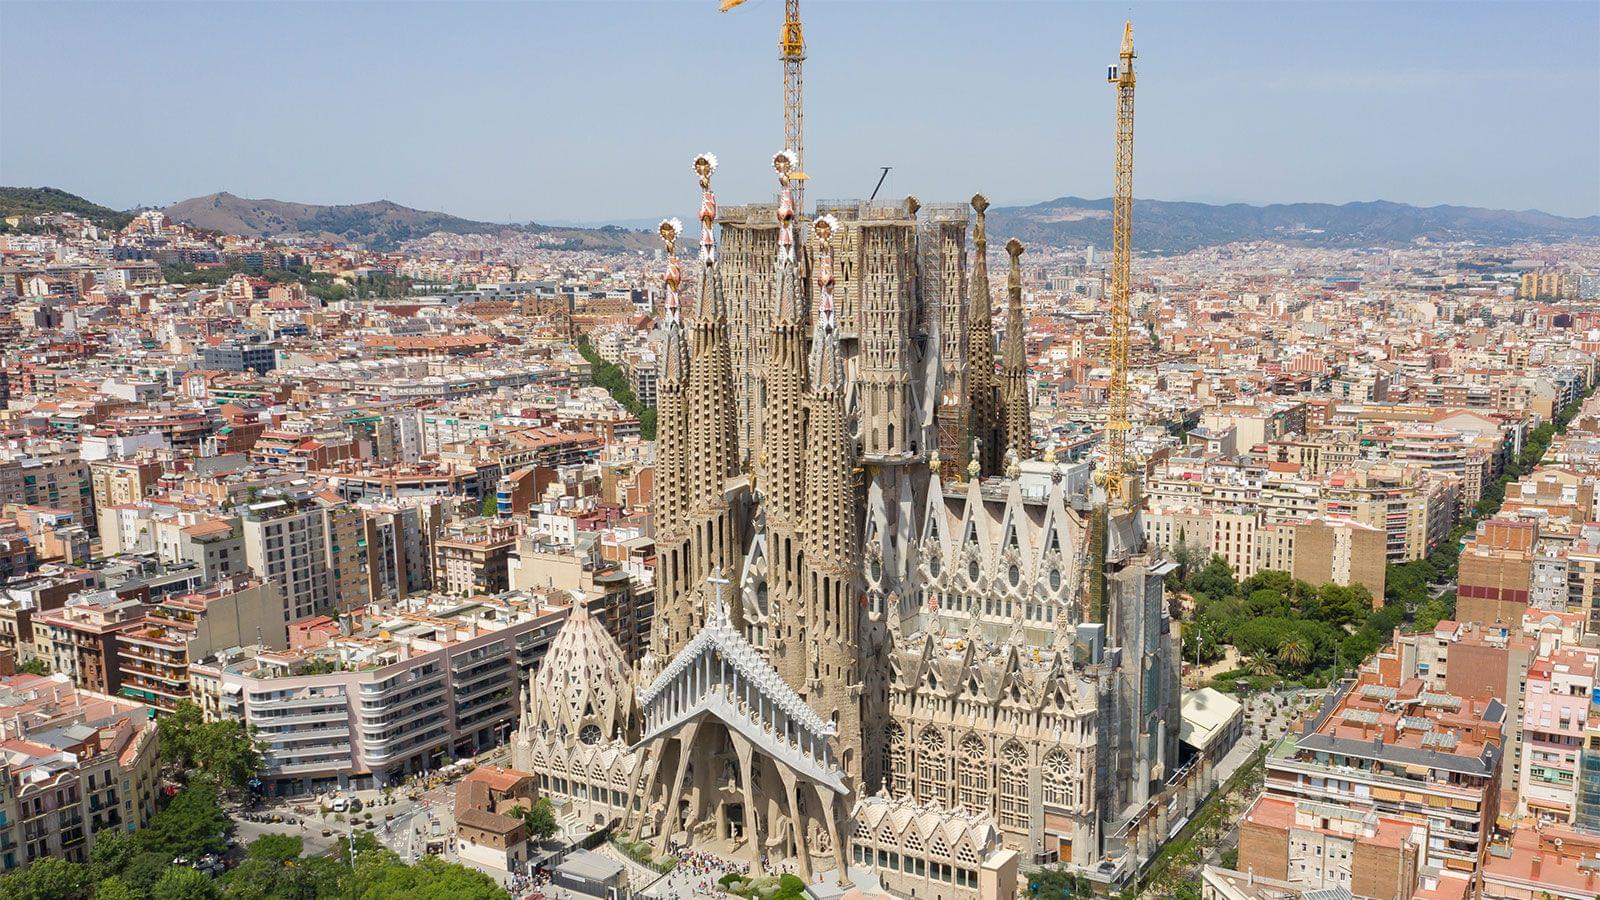 The Sagrada Familia Basilica